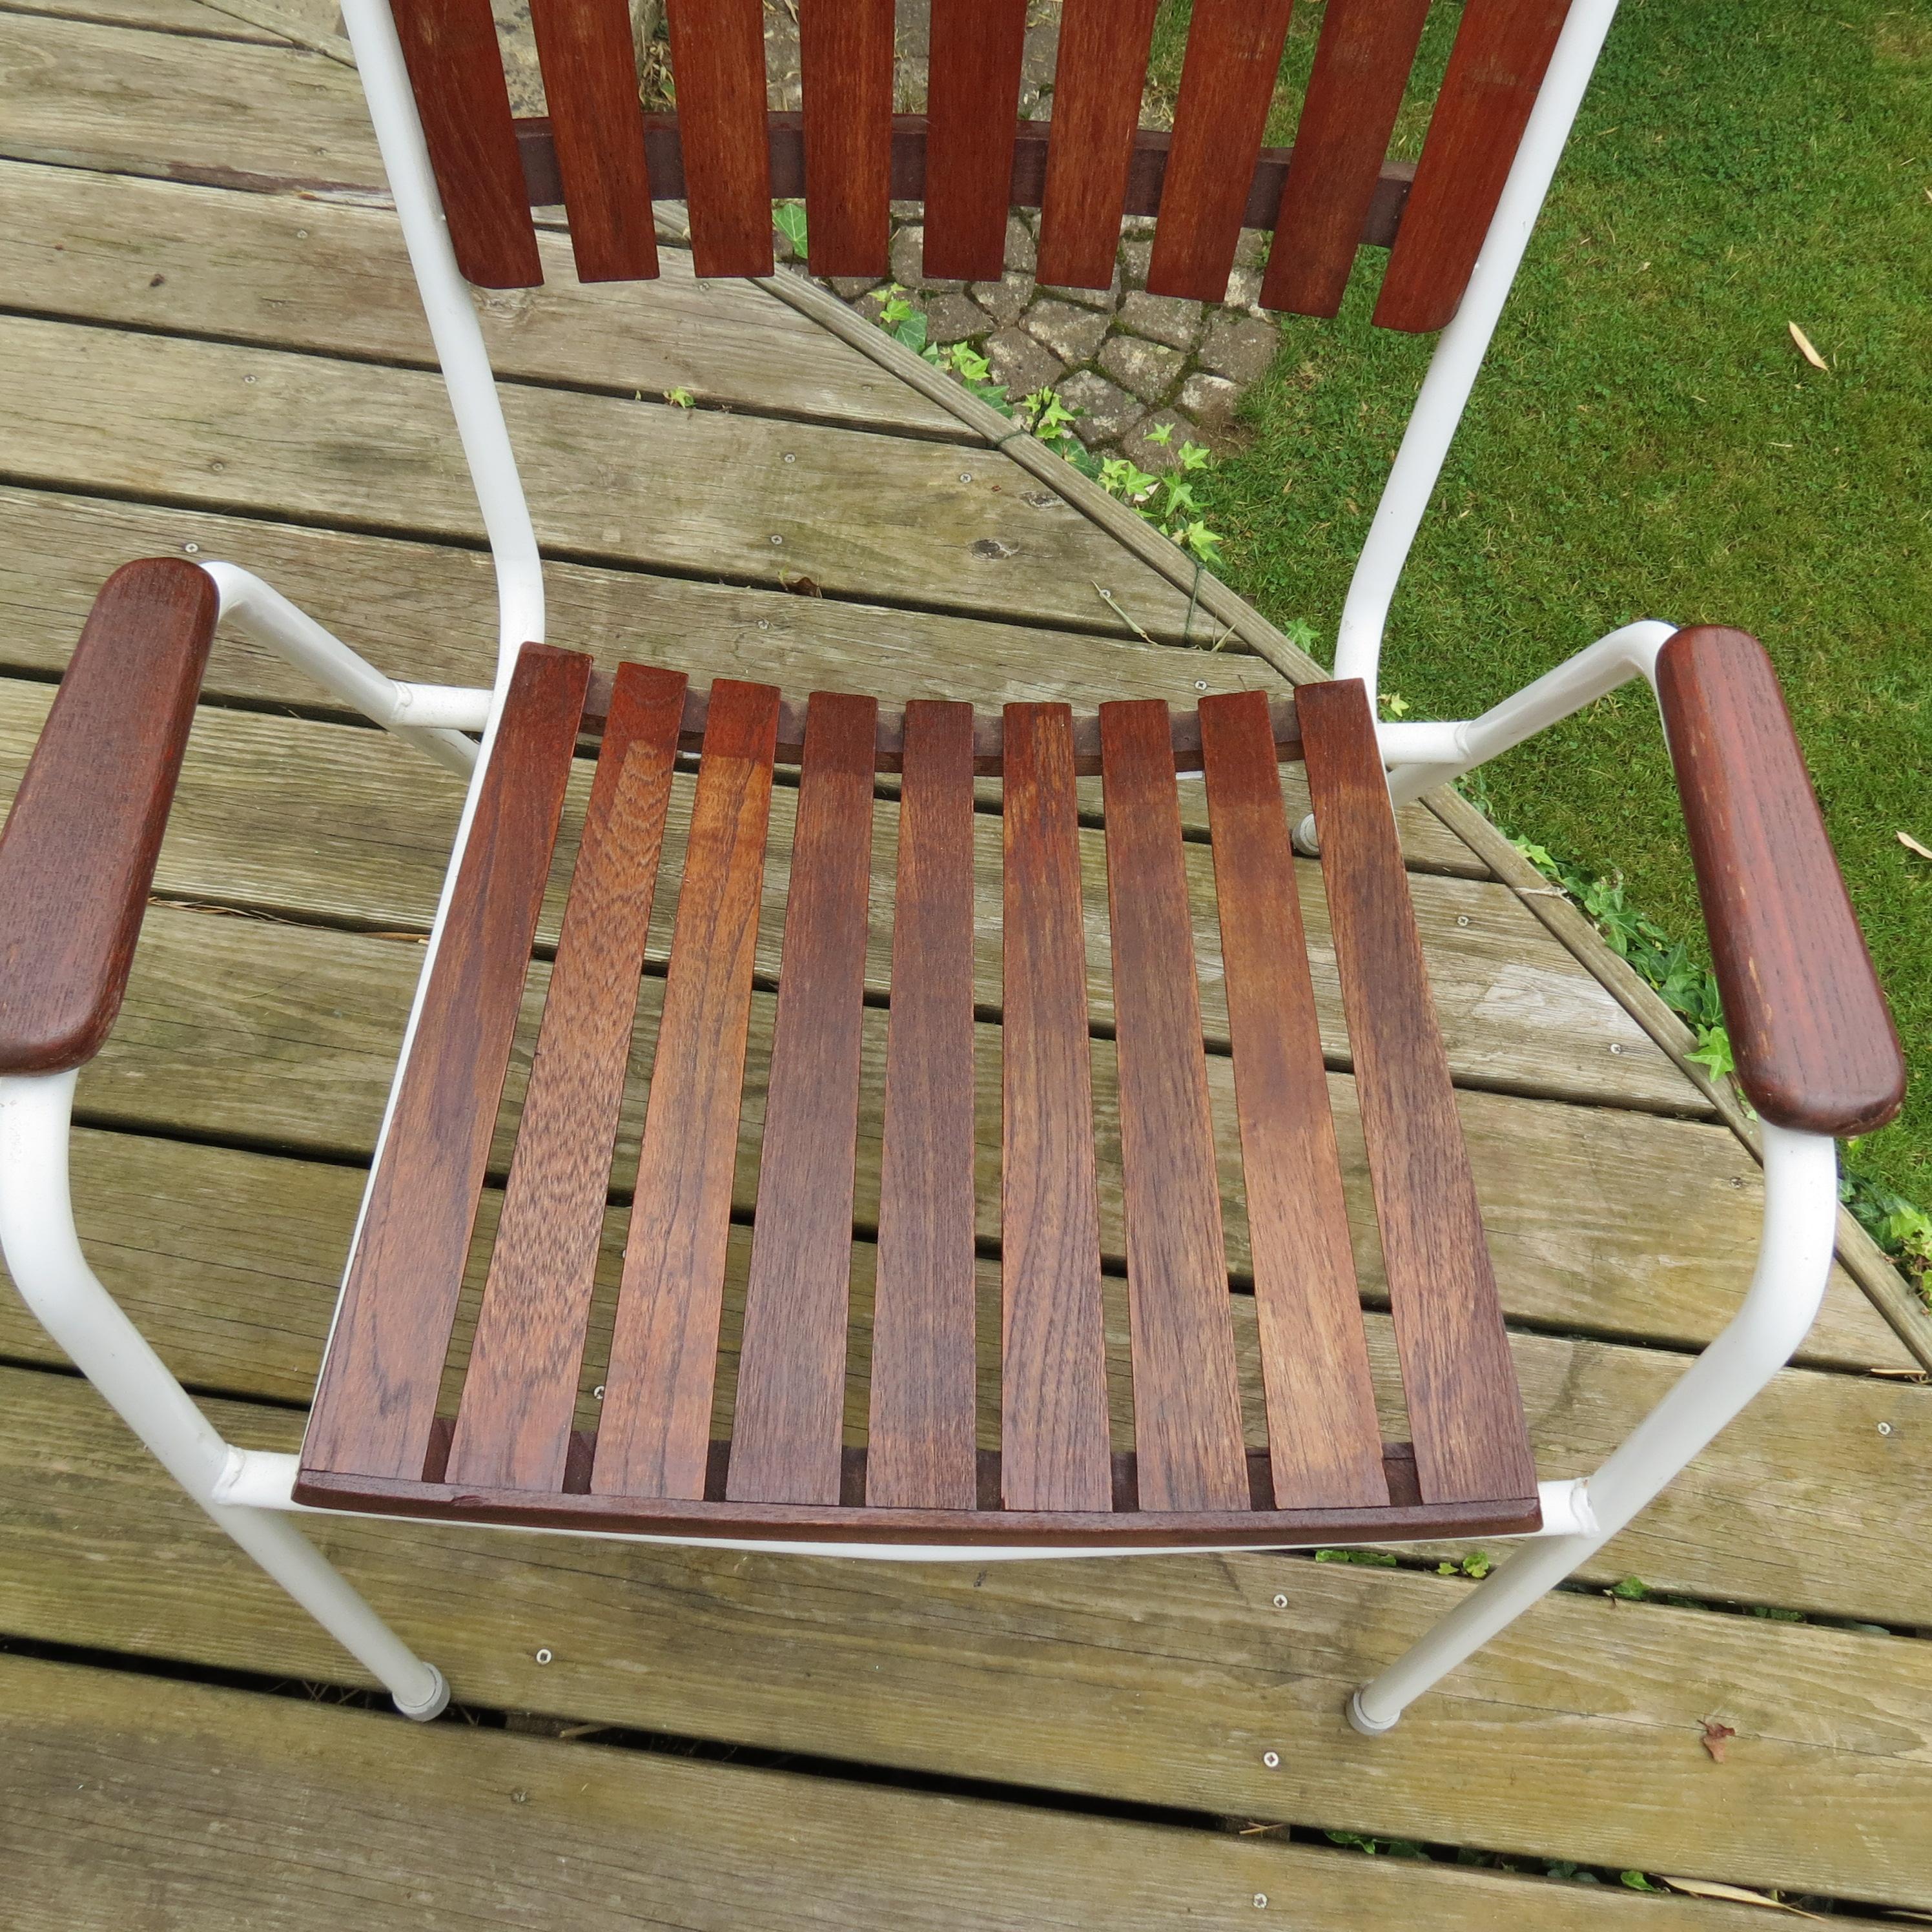 Midcentury Danish Garden Daneline Stacking chair 1